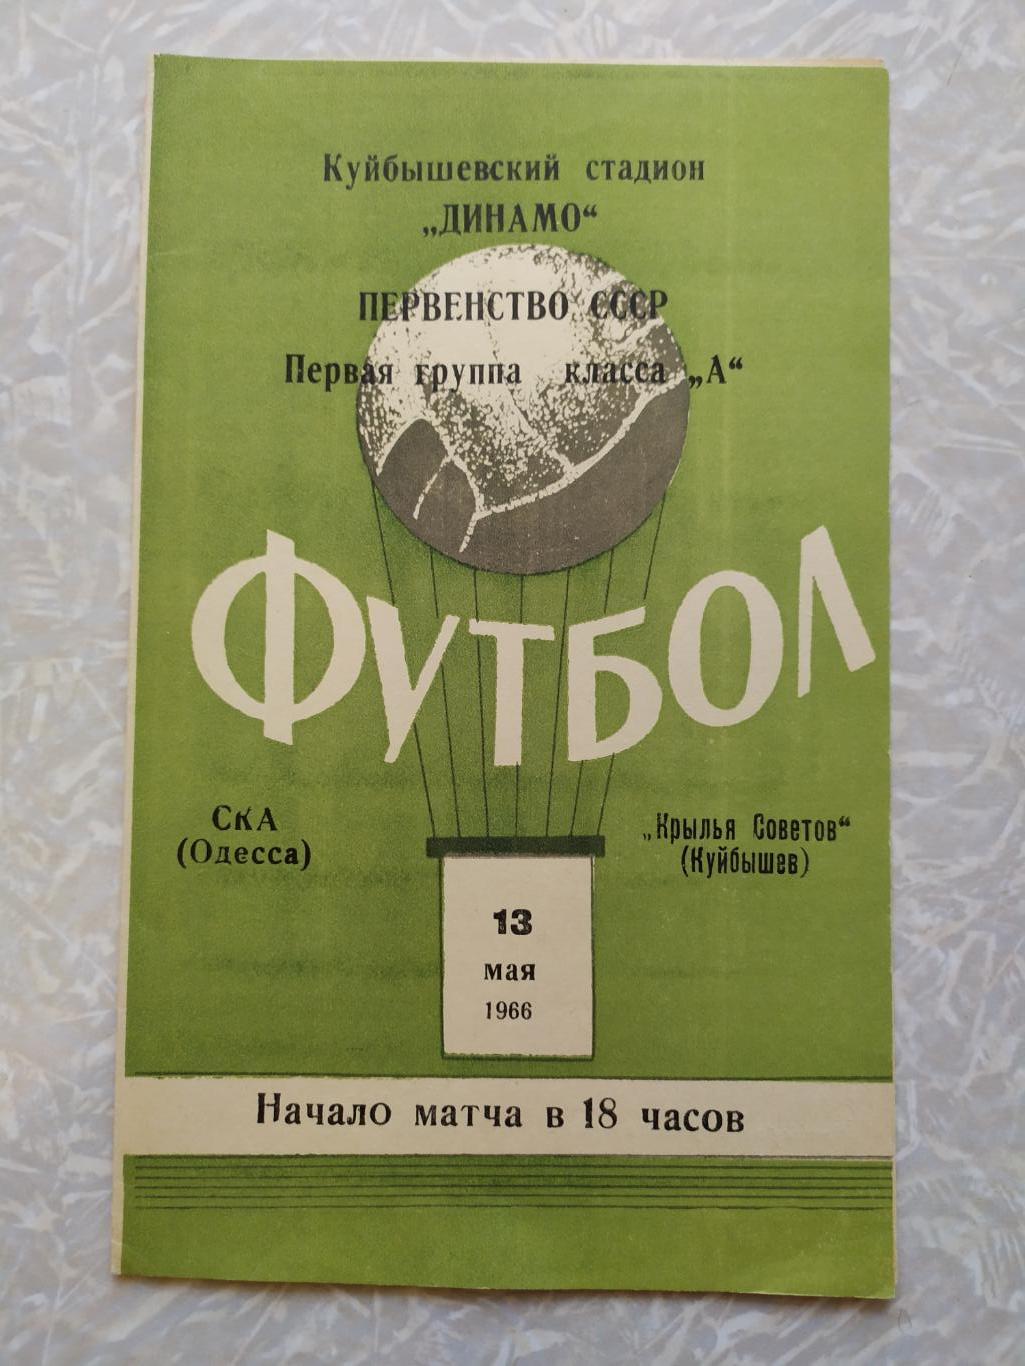 Крылья Советов -СКА Одесса 13.05.1966